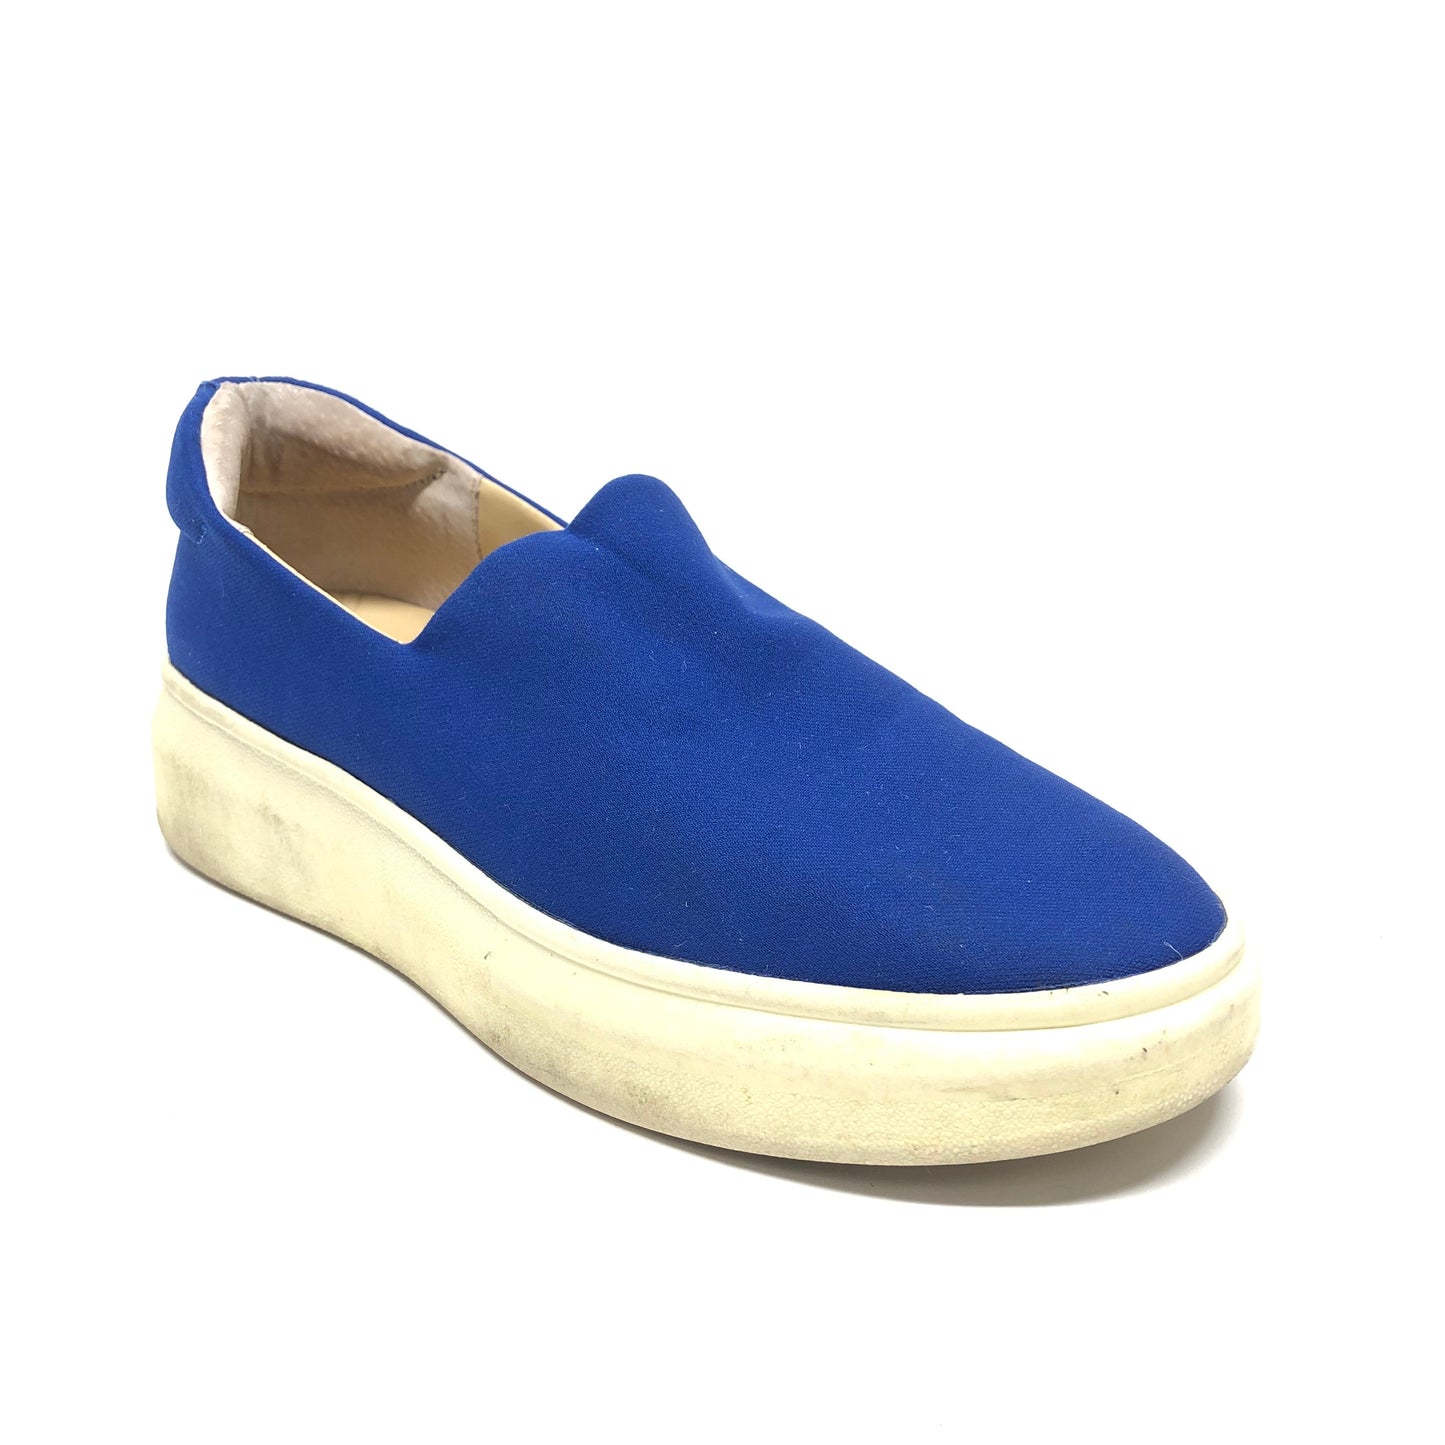 Blue Shoes Flats Sam Edelman, Size 8